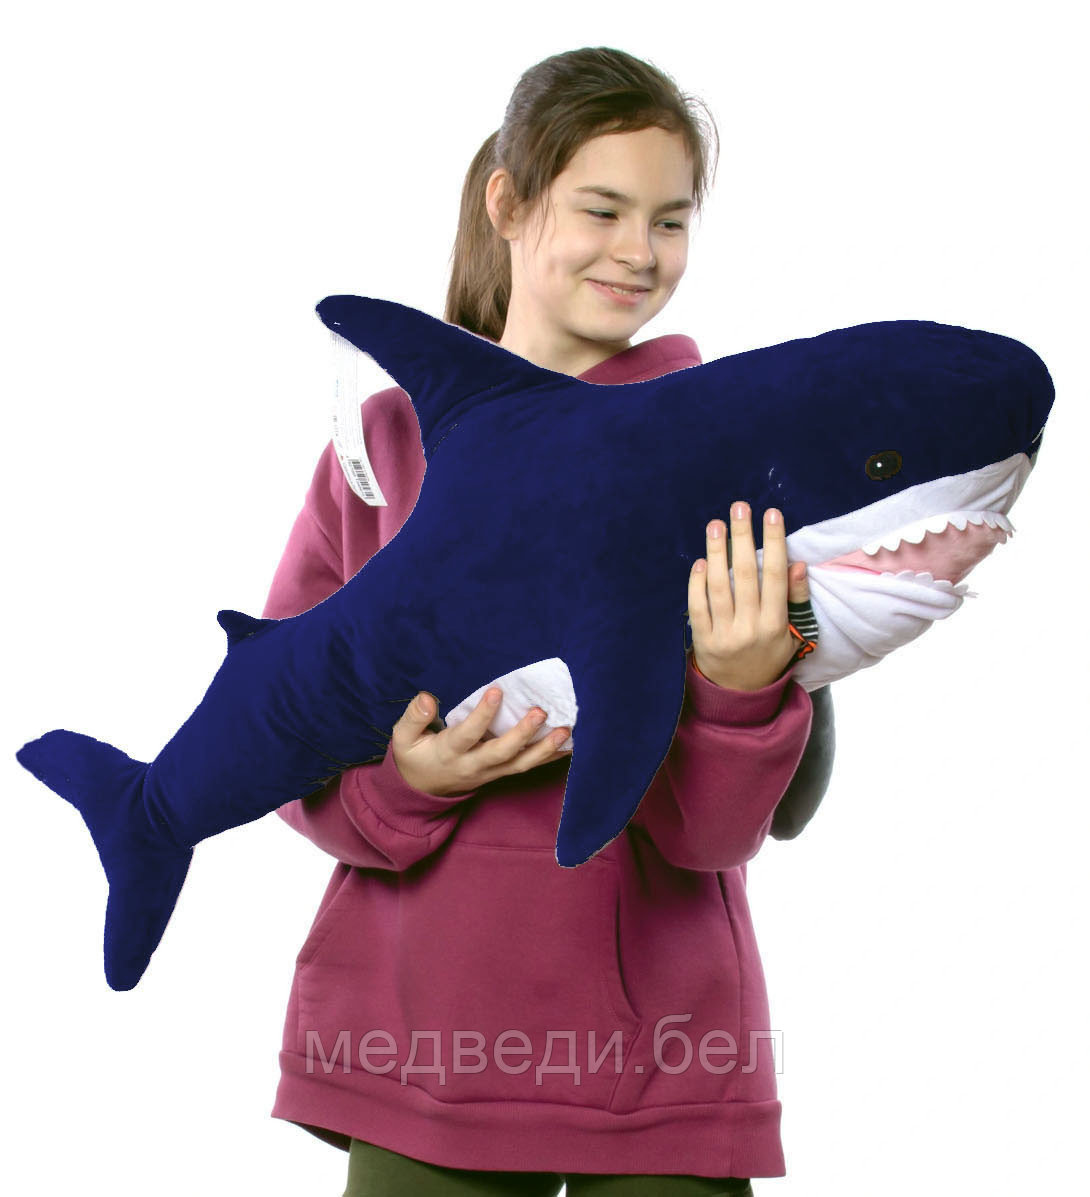 Мягкая игрушка Акула 100 см Тёмно-синяя